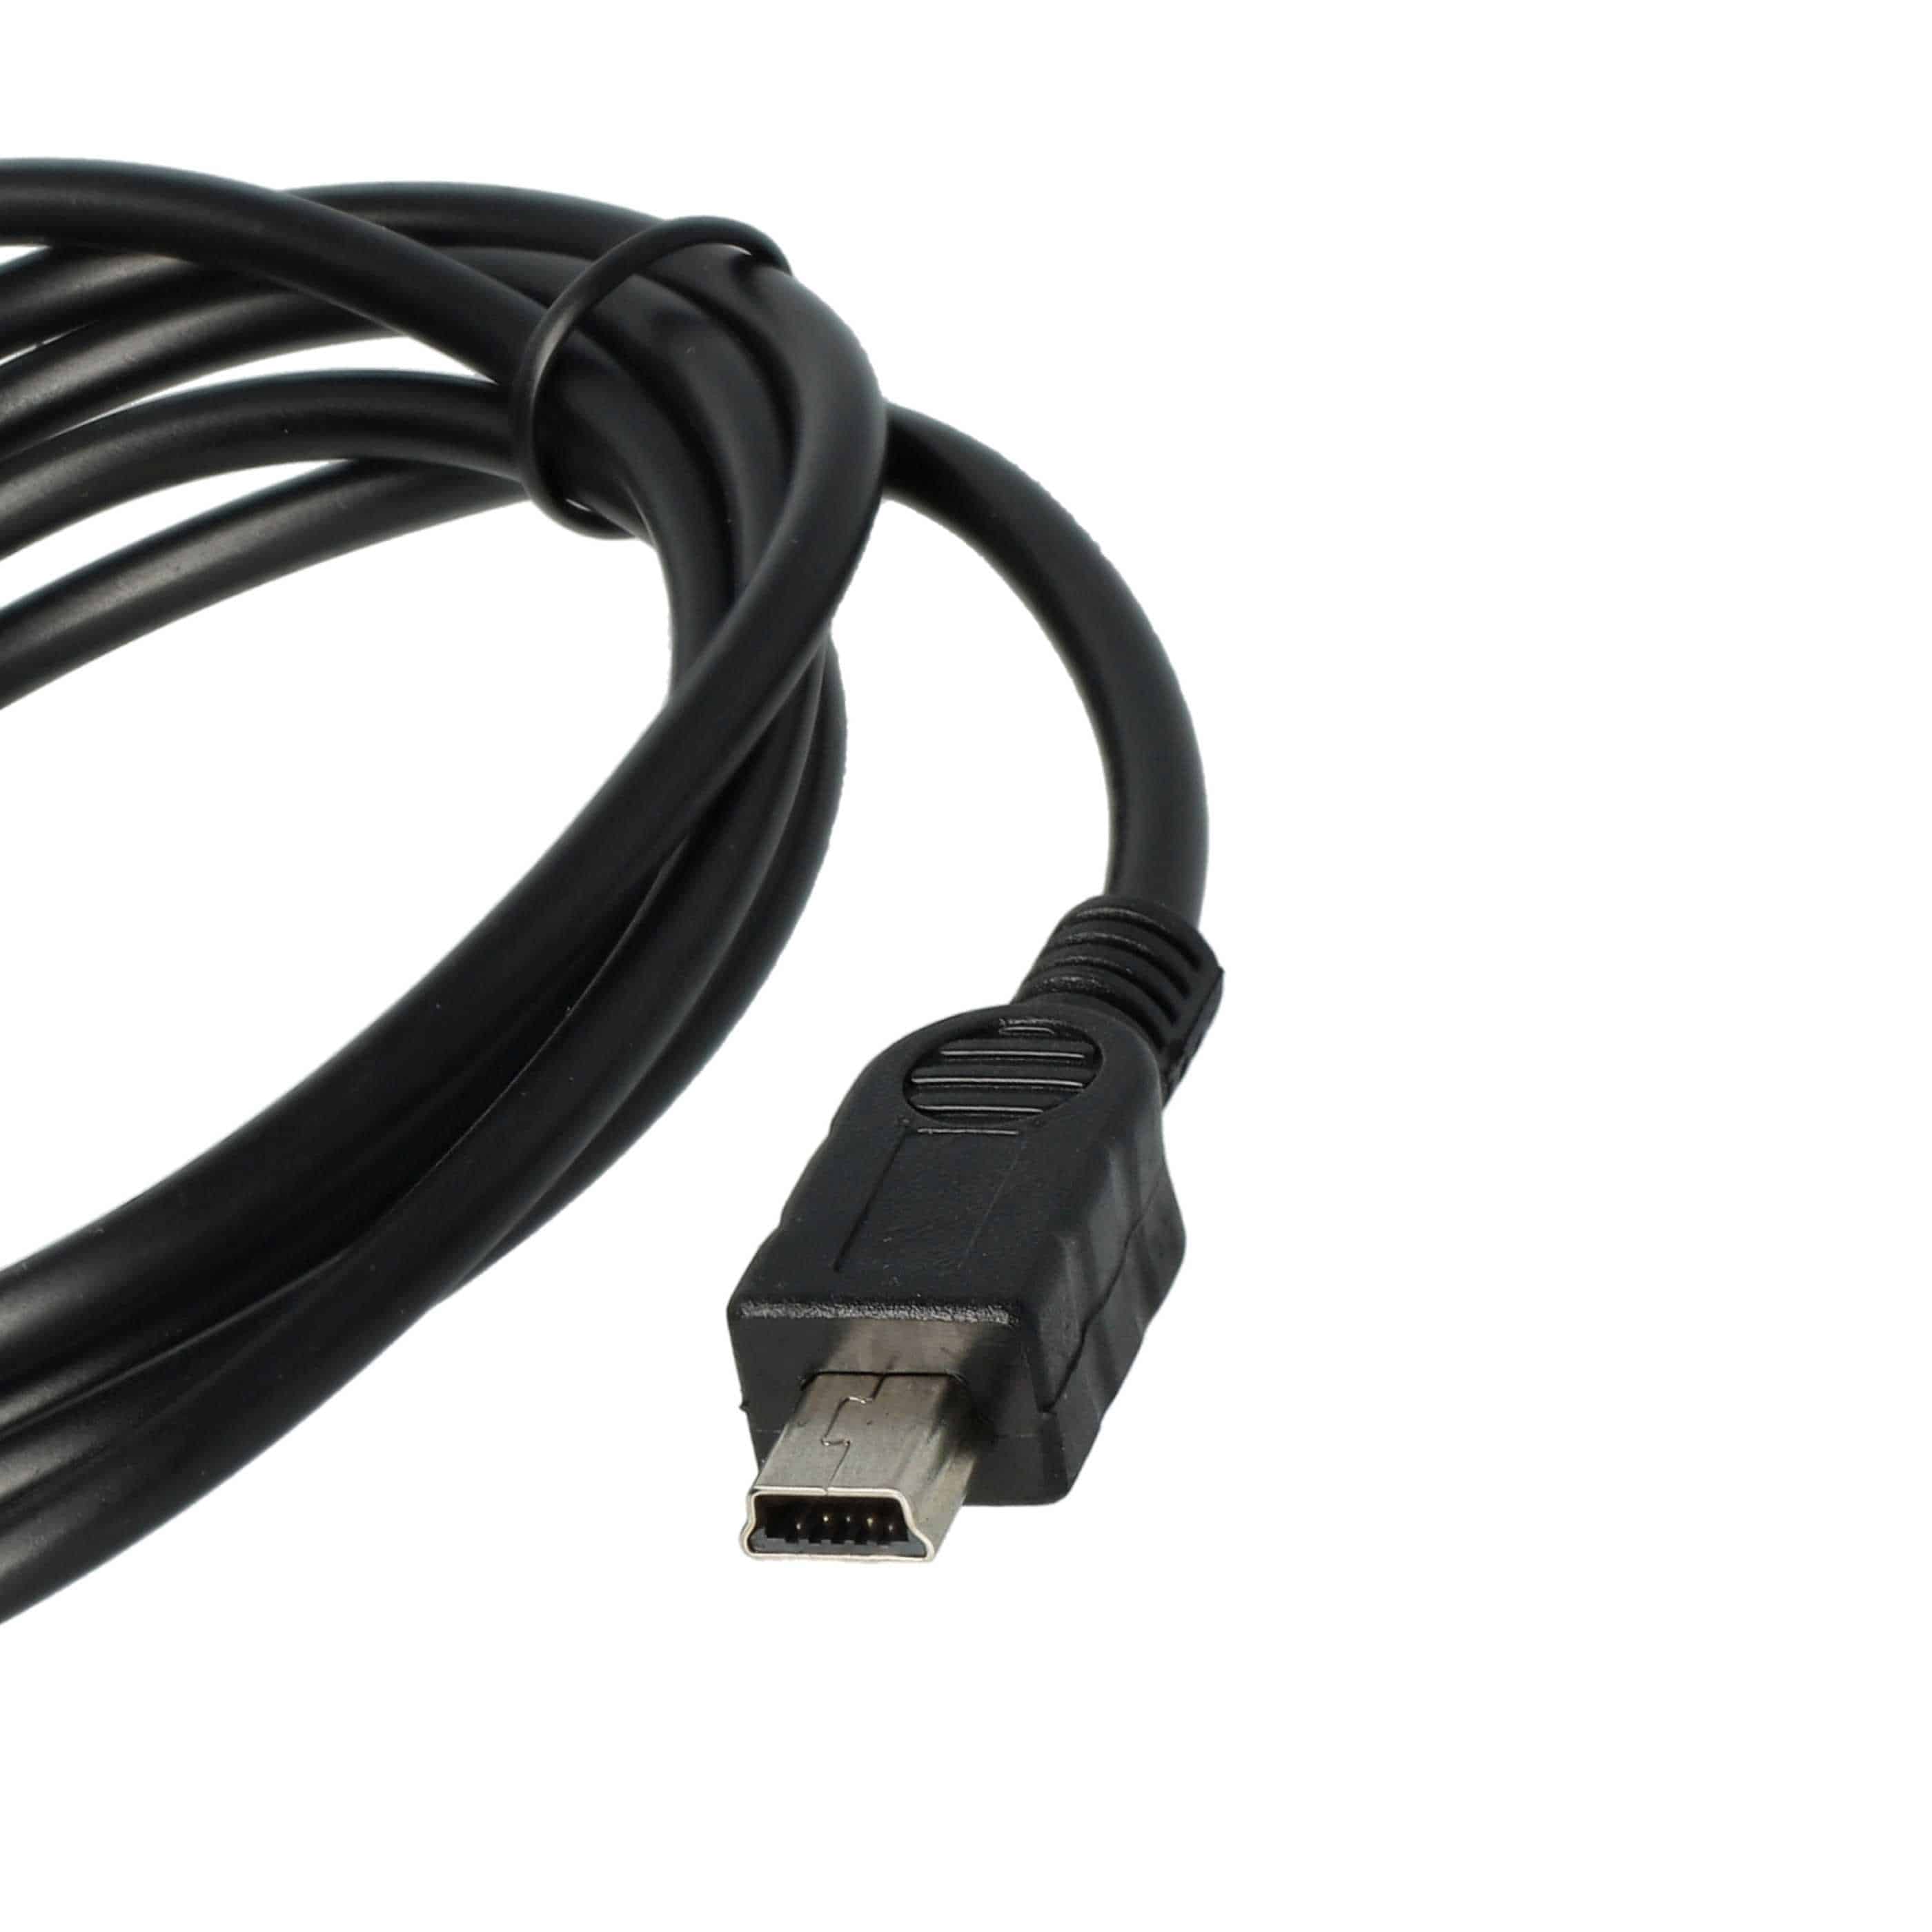 Cable datos USB cable carga (2 en 1) compatible con Mustek navegadores, GPS